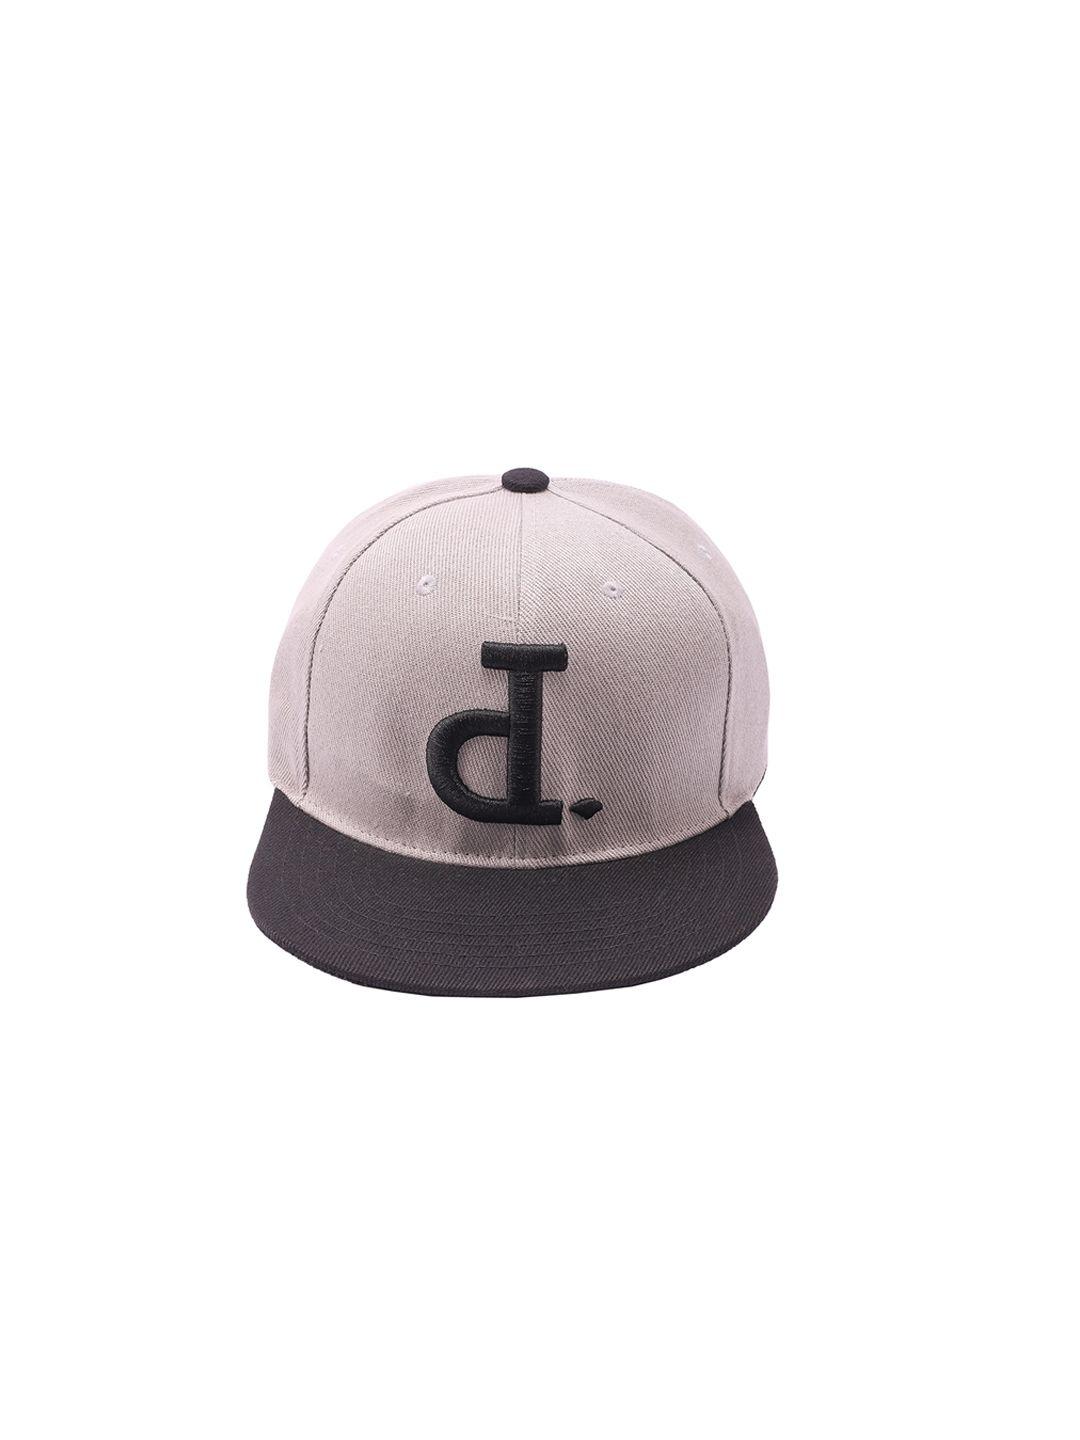 cap shap unisex grey & black colourblocked baseball cap